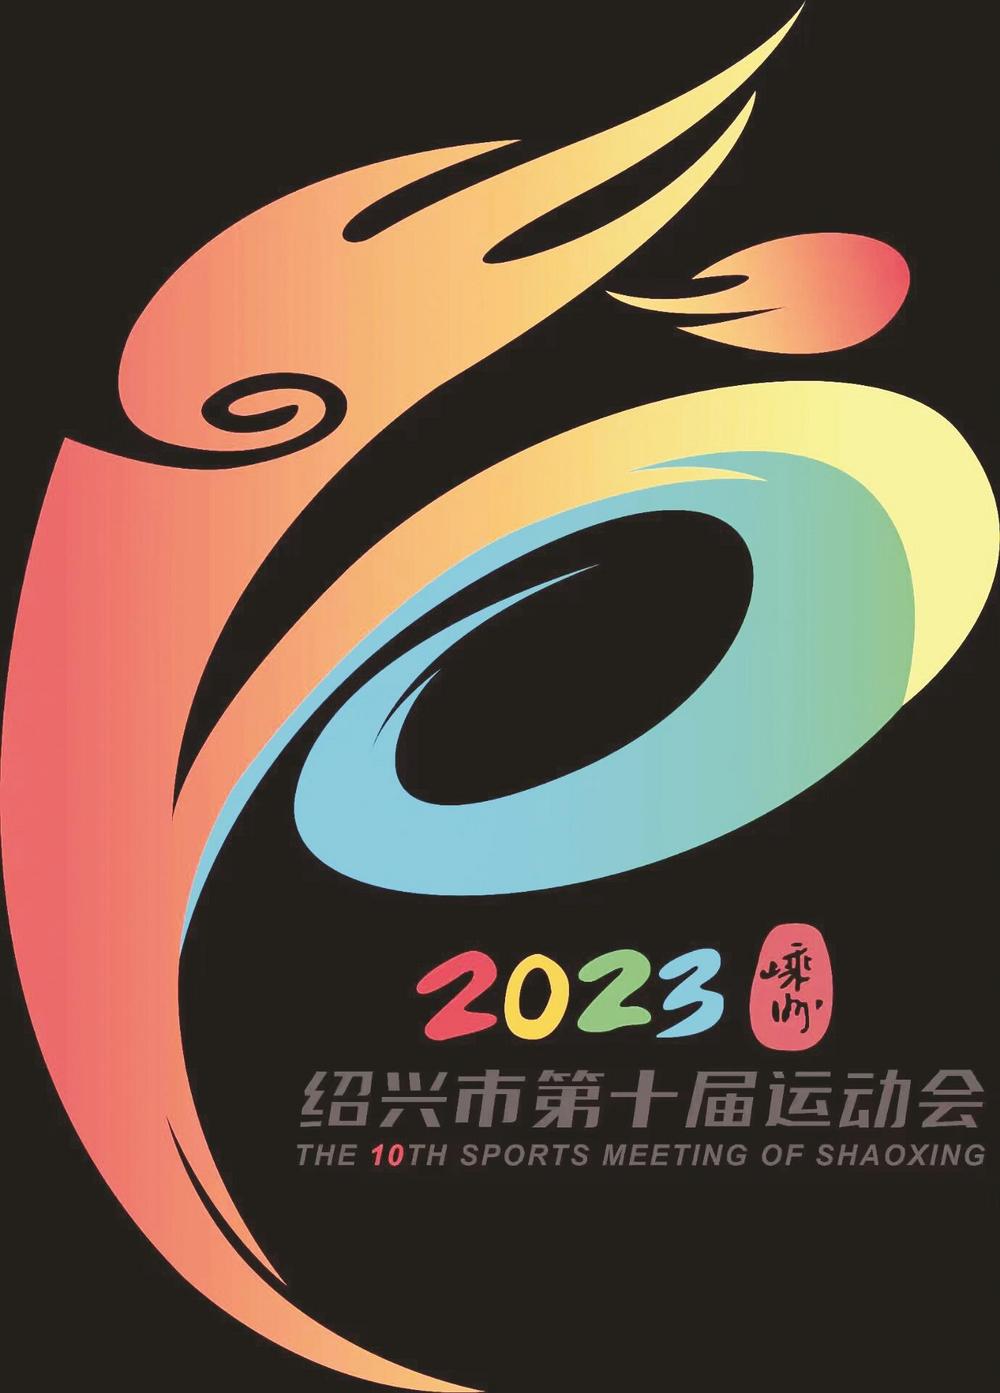 绍兴市十运会会徽发布 比赛将于5月至10月举行